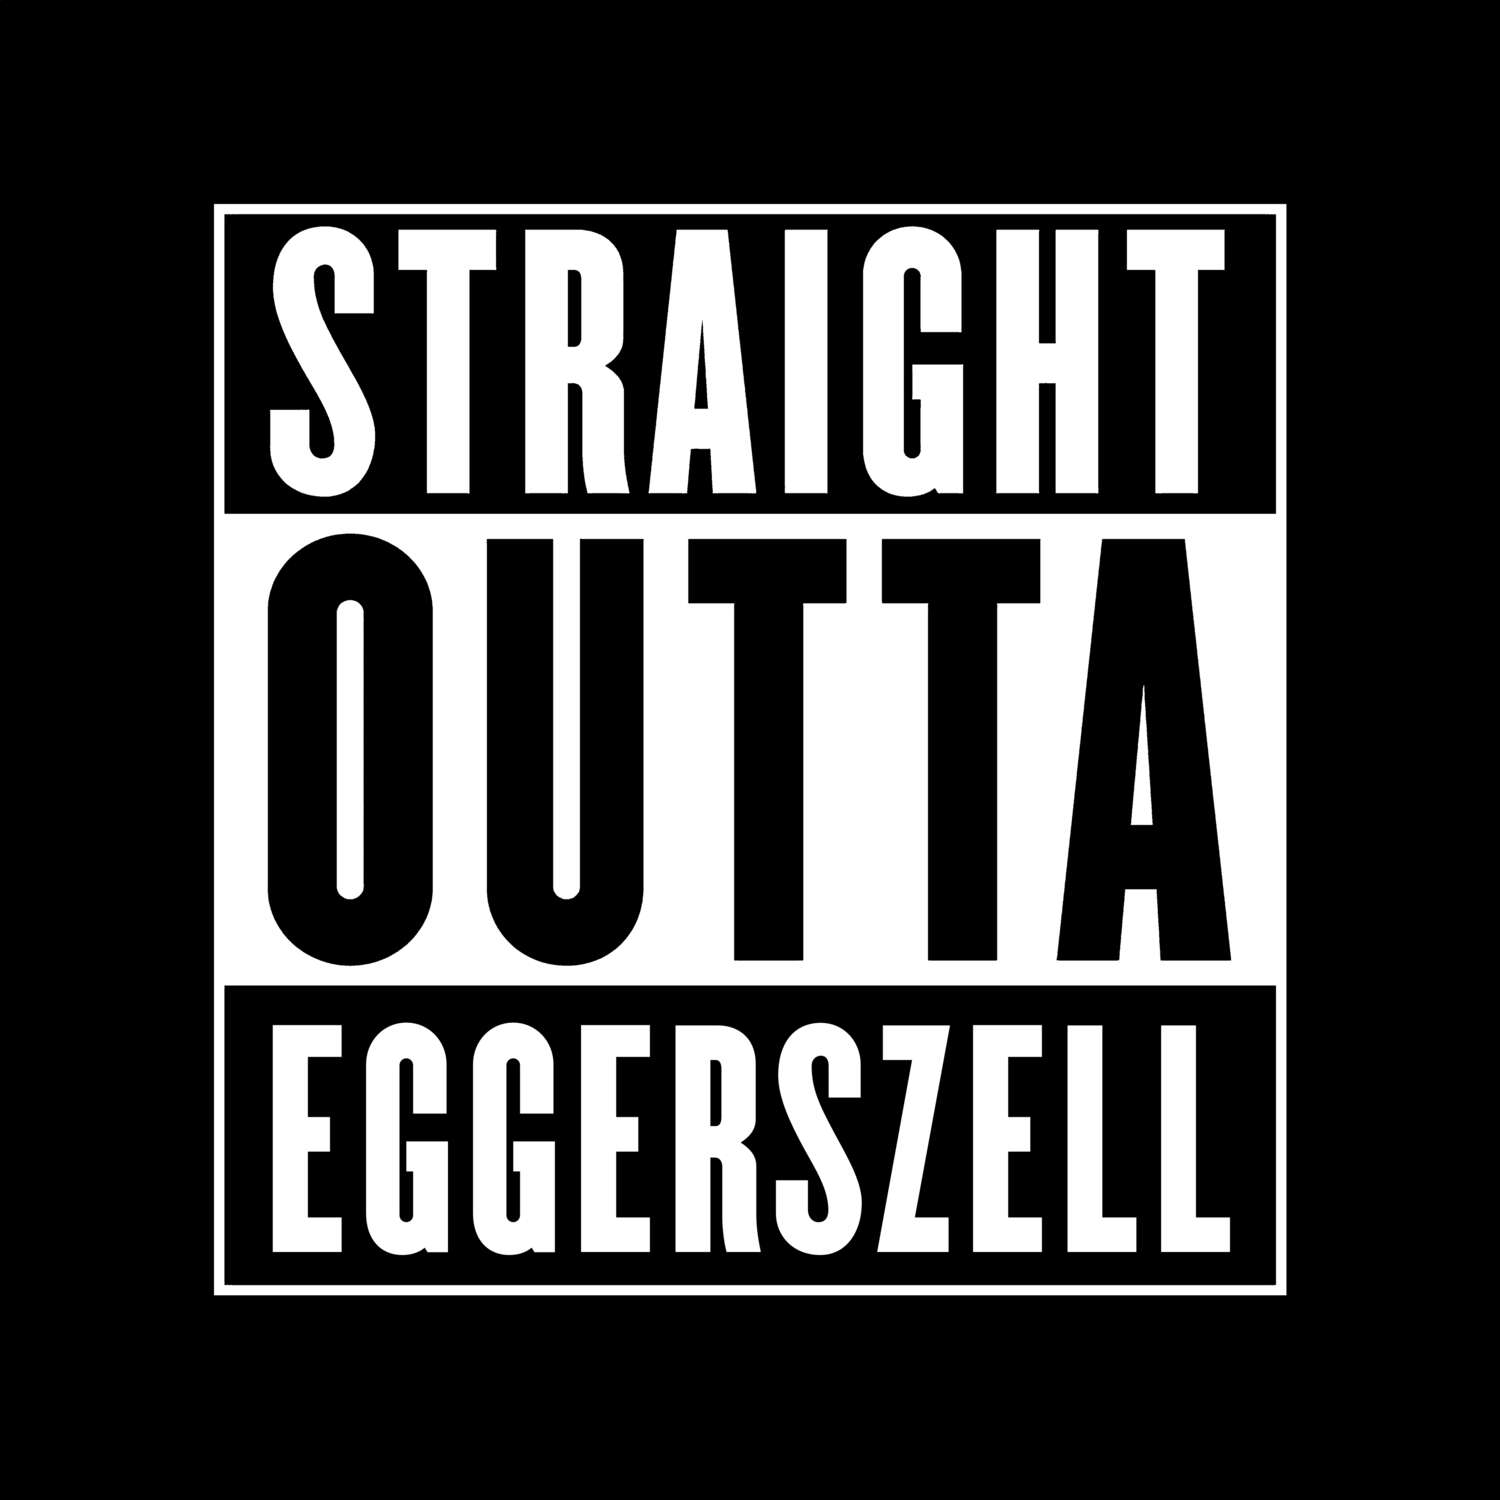 Eggerszell T-Shirt »Straight Outta«